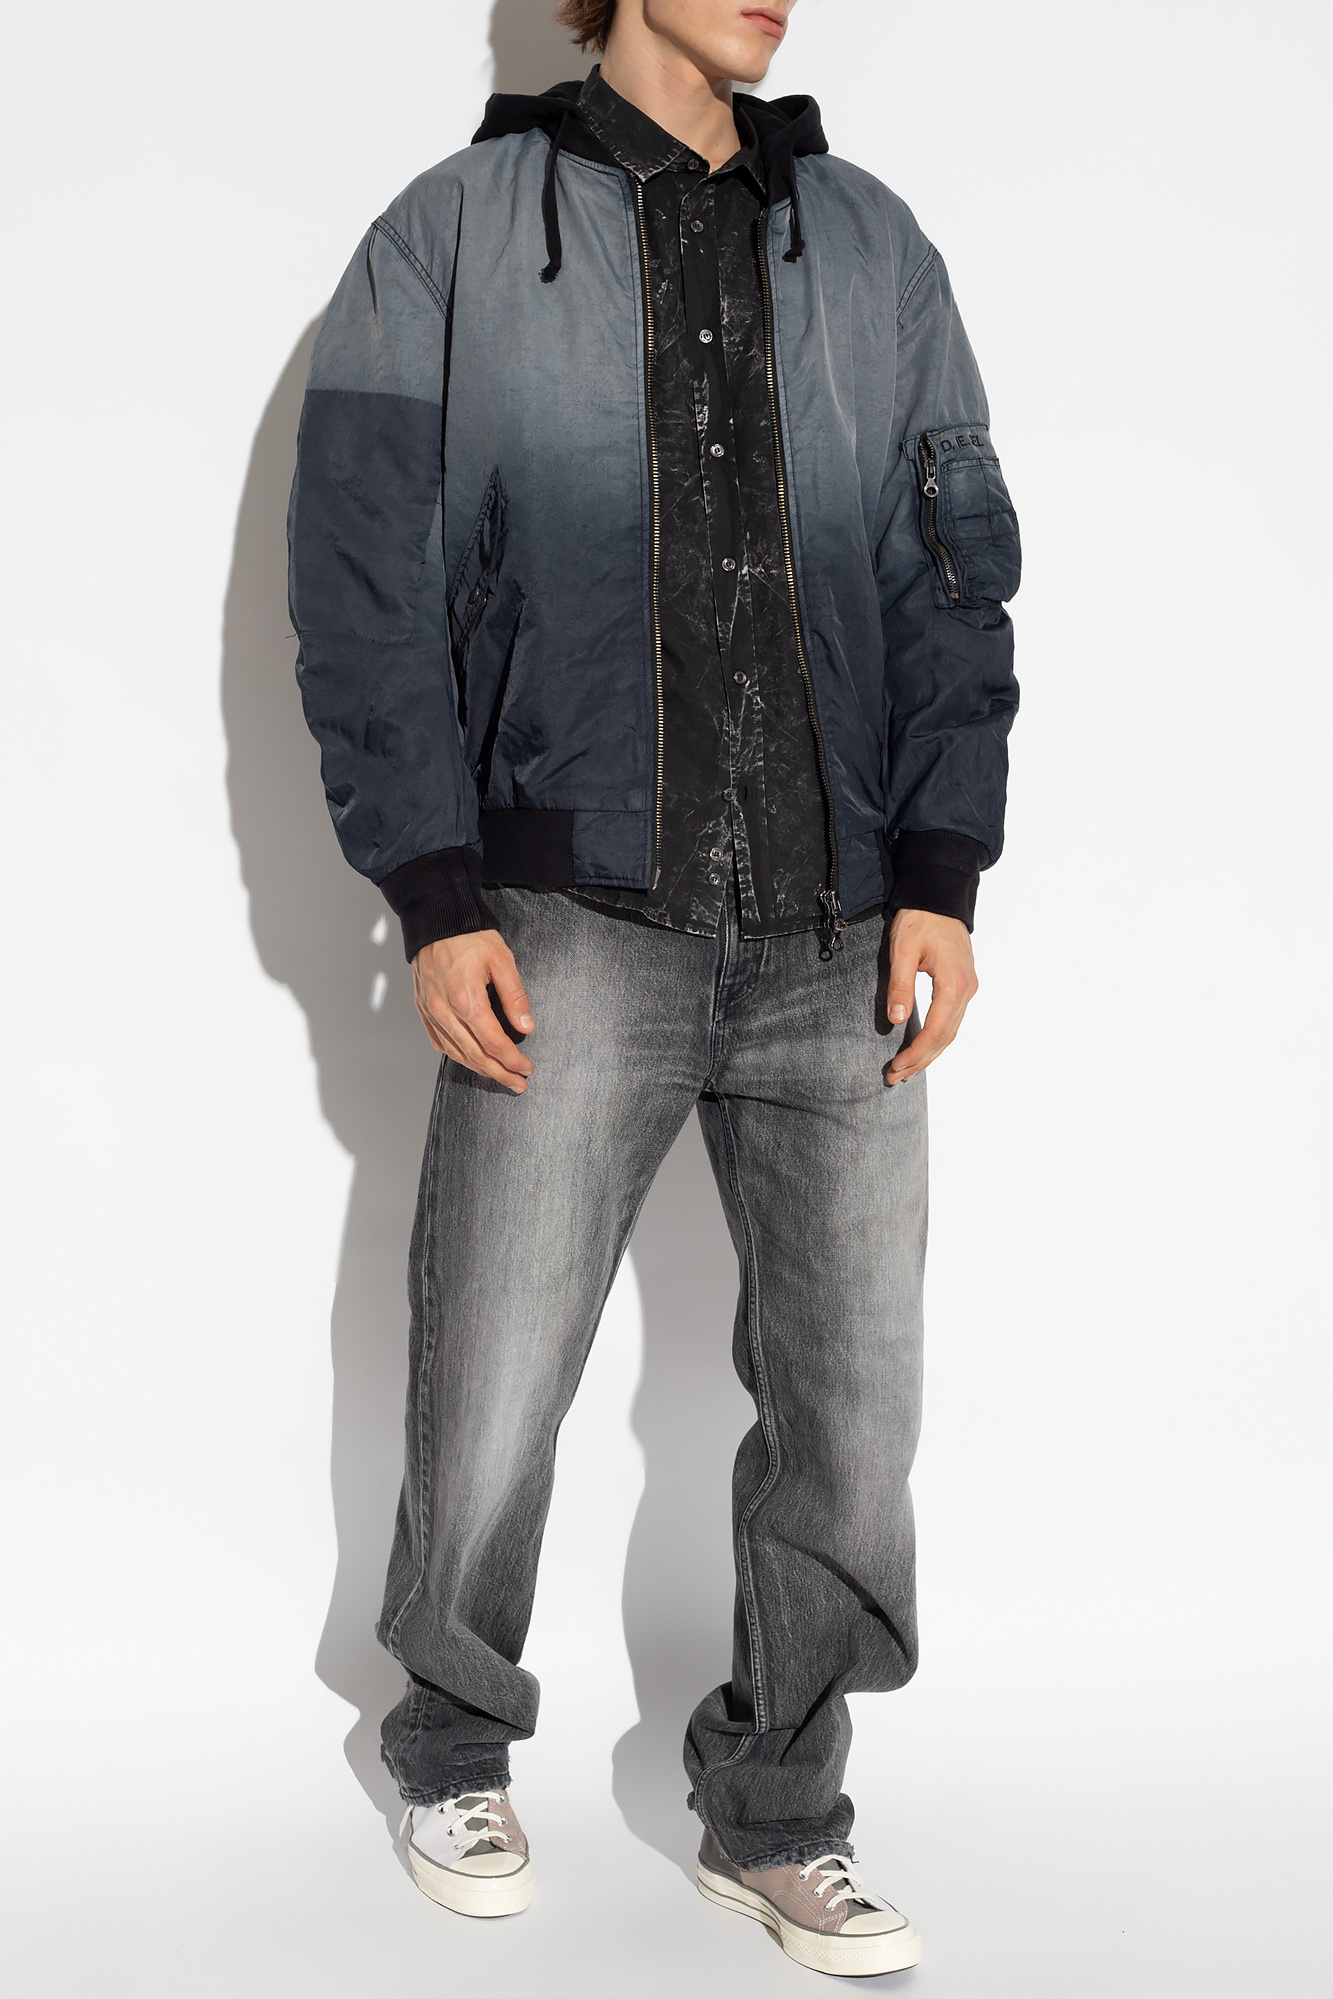 Diesel 'J-COMMON' bomber jacket | Men's Clothing | Vitkac